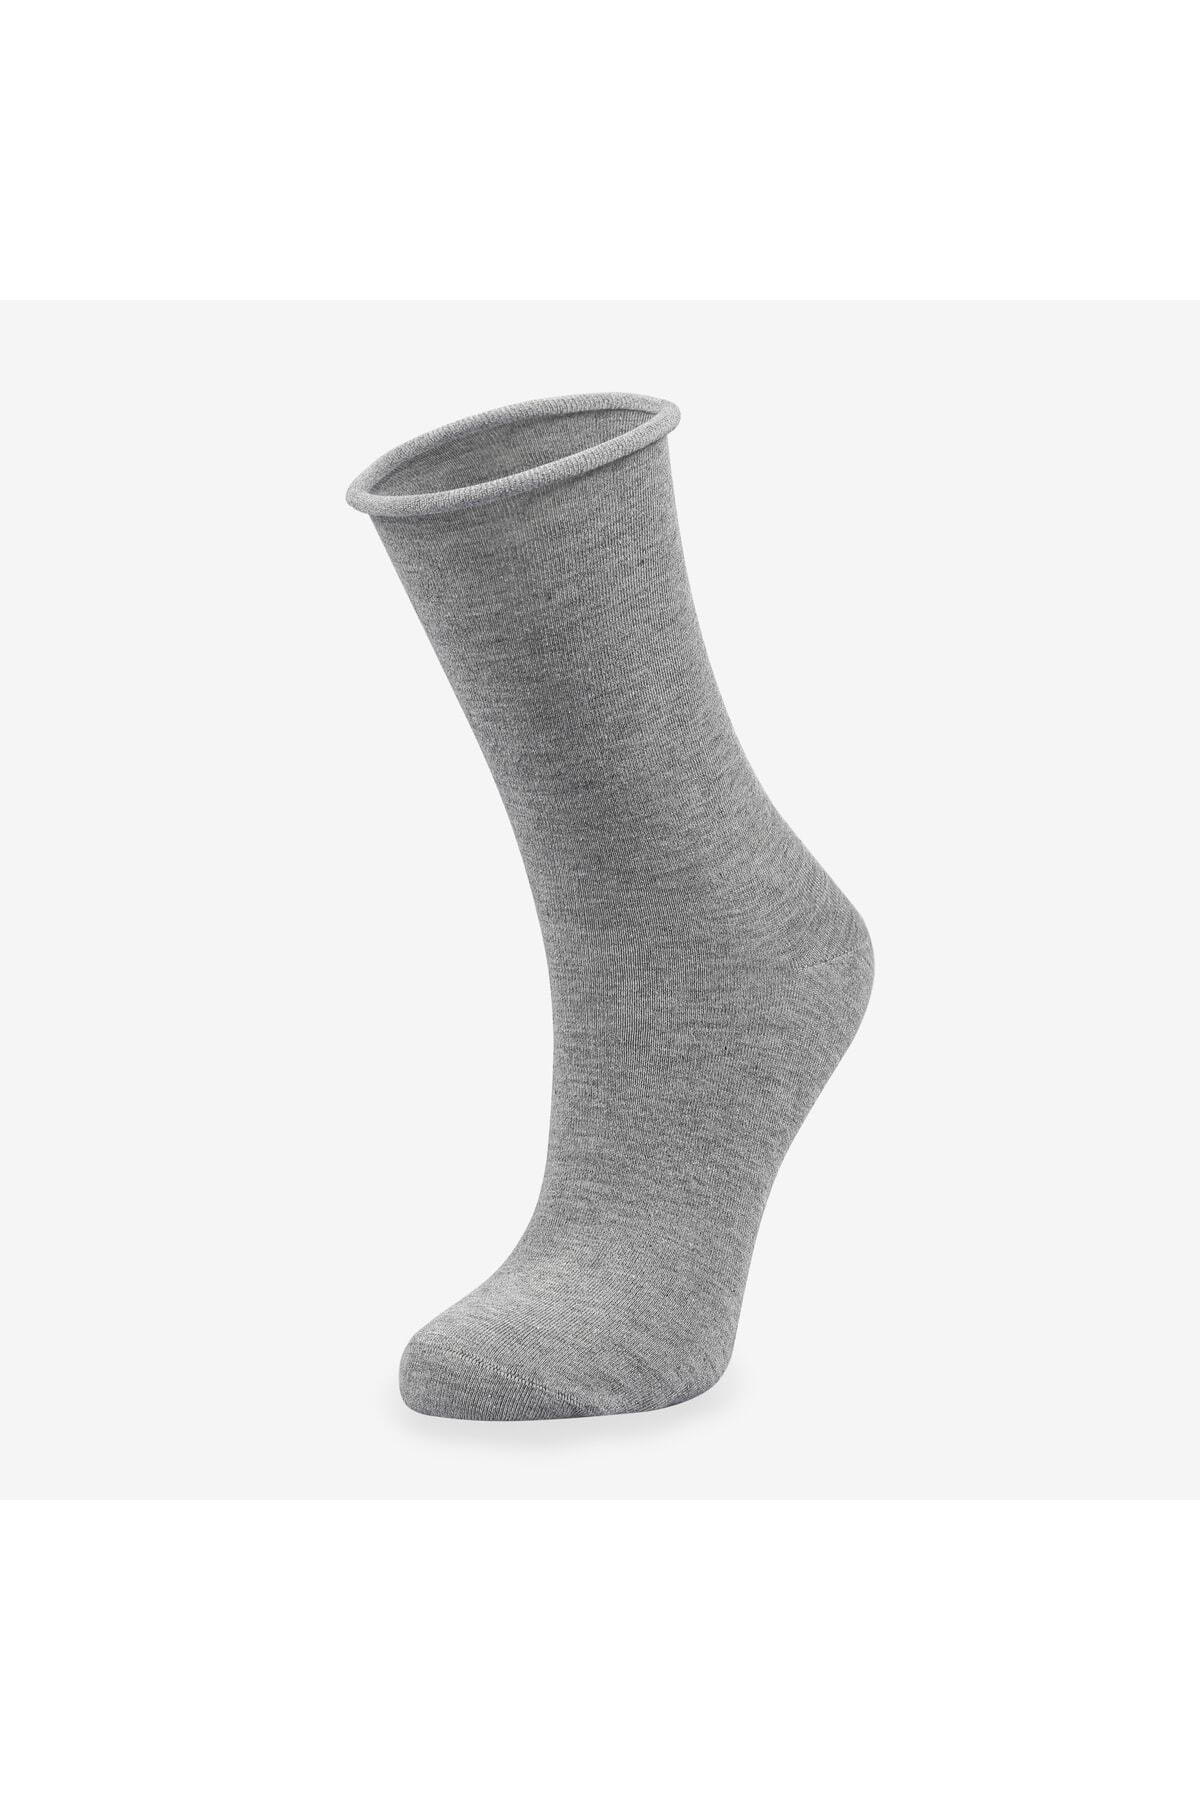 Bolero Roll Top Lastiksiz Kadın Gri Bambu Soket Çorap